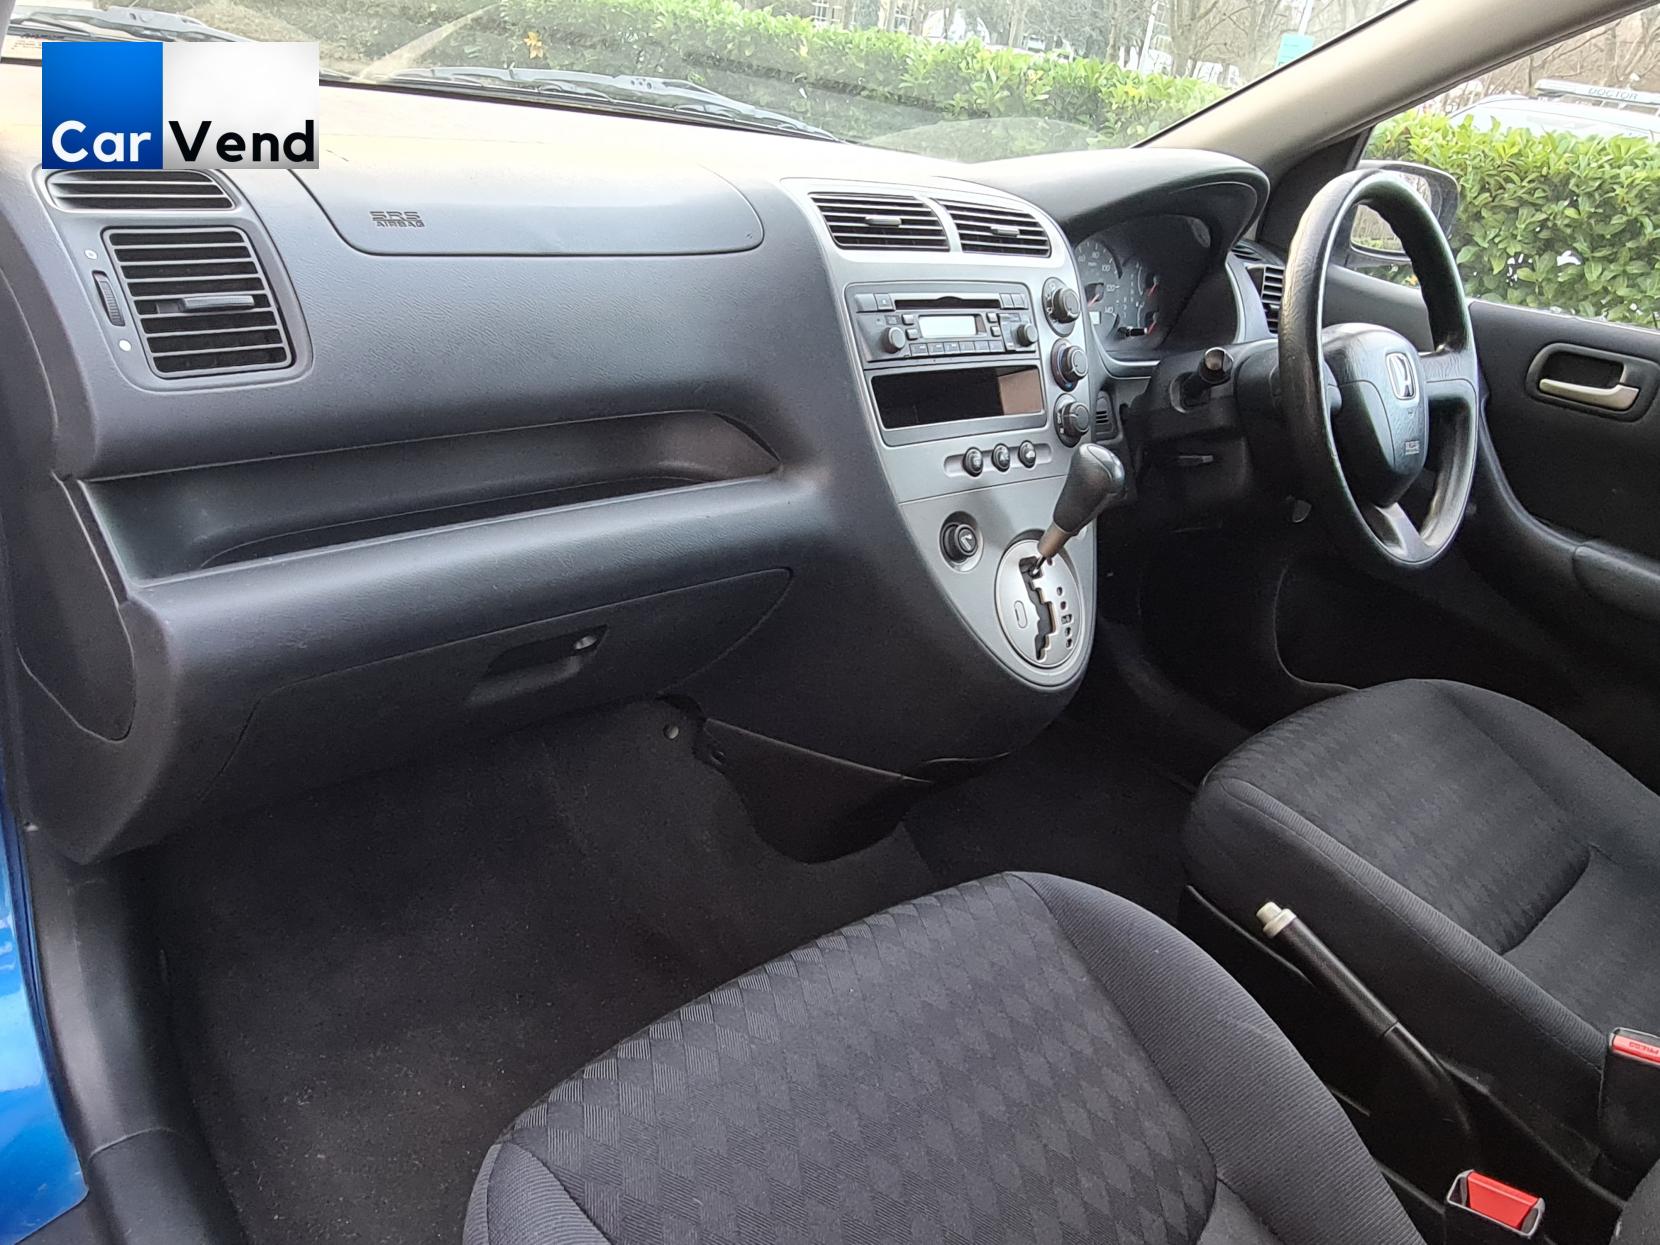 Honda Civic 1.6 i-VTEC S Hatchback 5dr Petrol Automatic (169 g/km, 108 bhp)